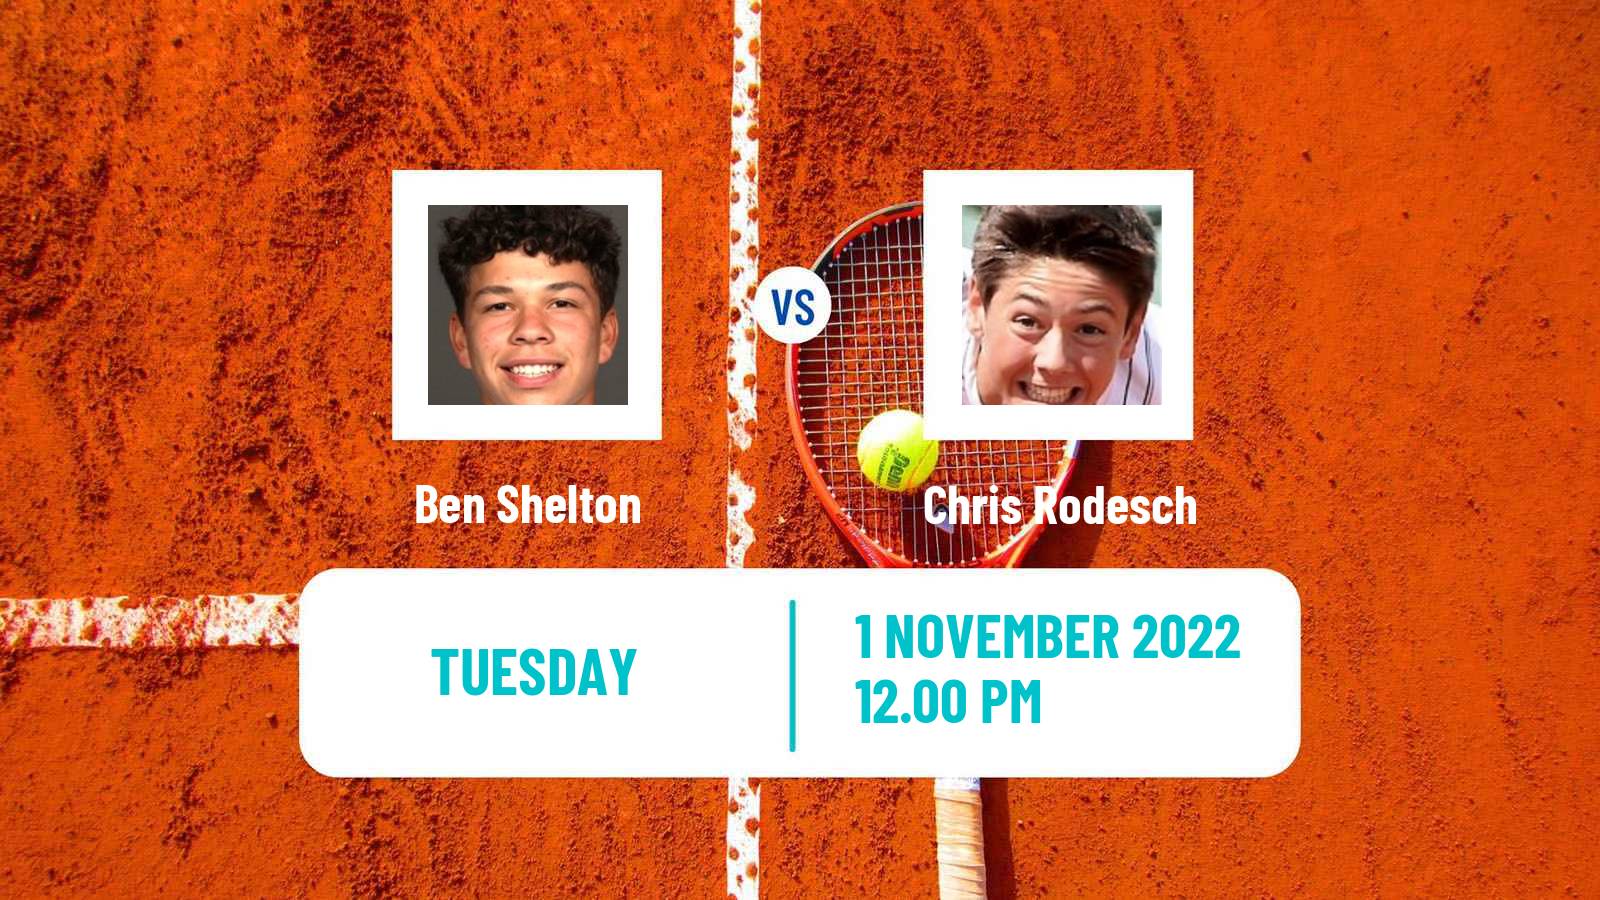 Tennis ATP Challenger Ben Shelton - Chris Rodesch